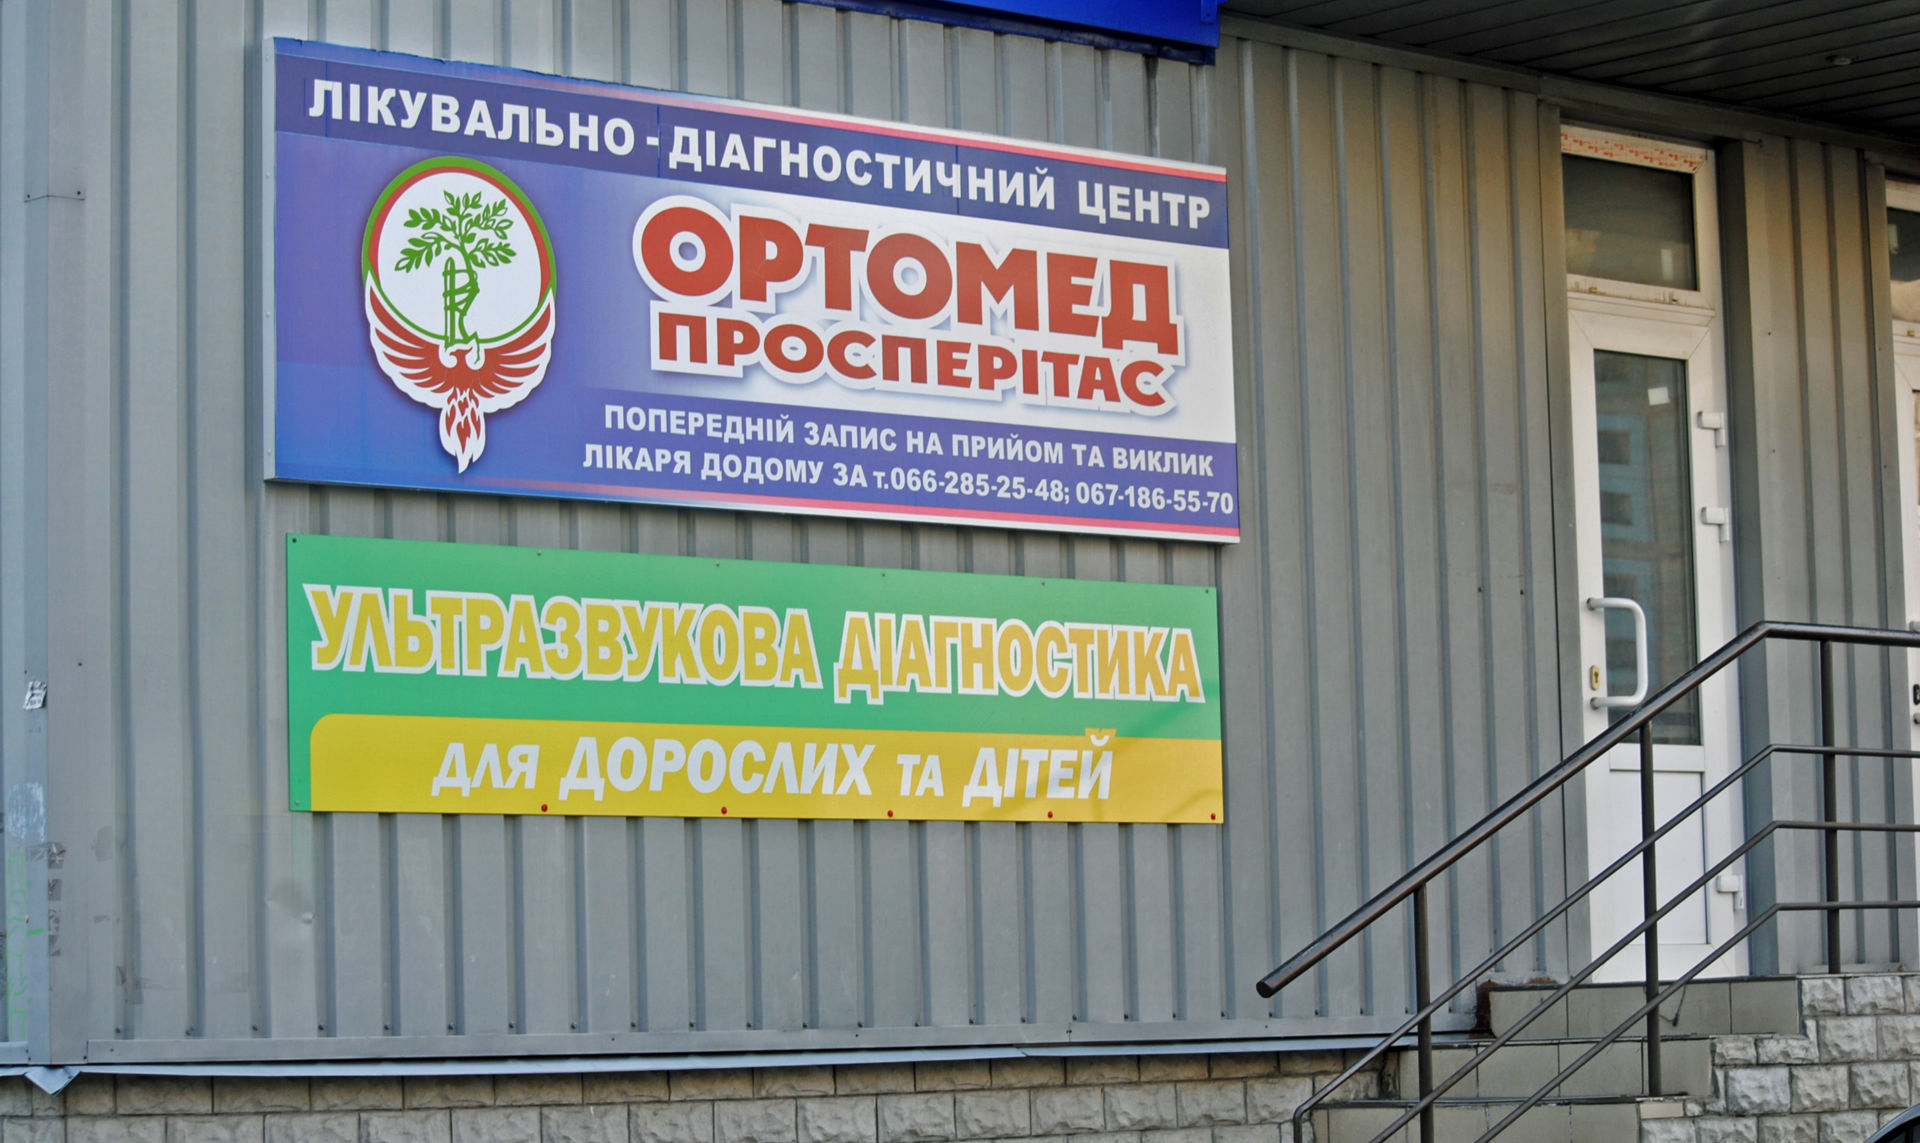 Клиника “Ортомед просперитас” в Полтаве